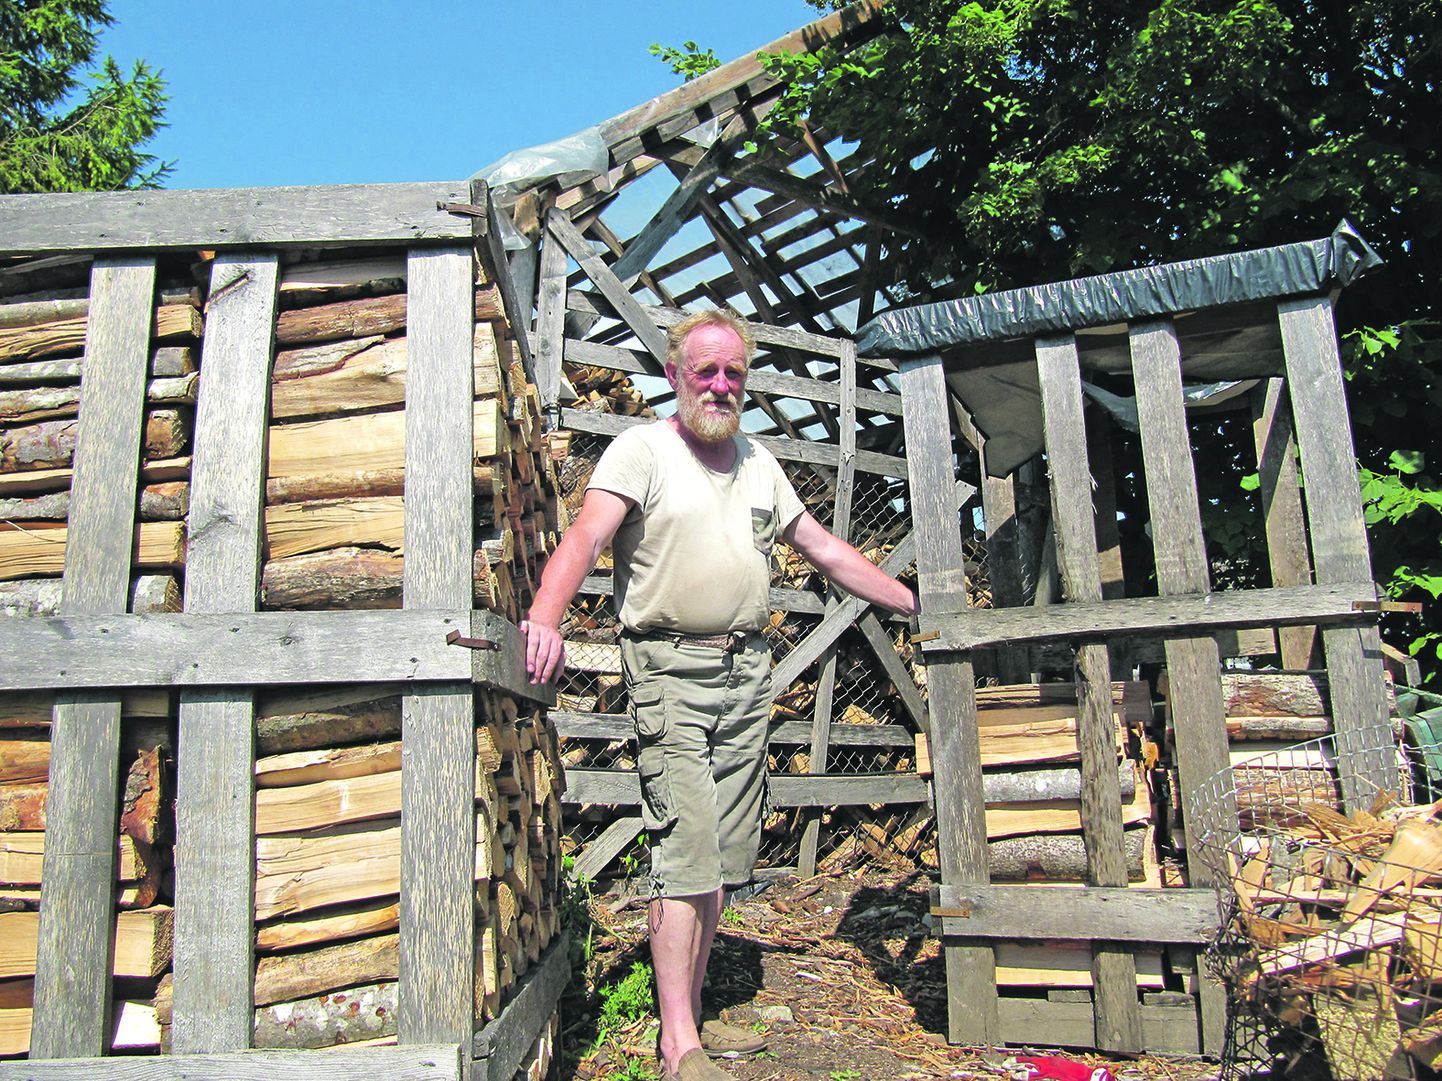 У жителей села самый проверенный способ сэкономить на тепле – запастись 
дровами загодя. Тем более что цены на дрова сейчас резко взлетели.